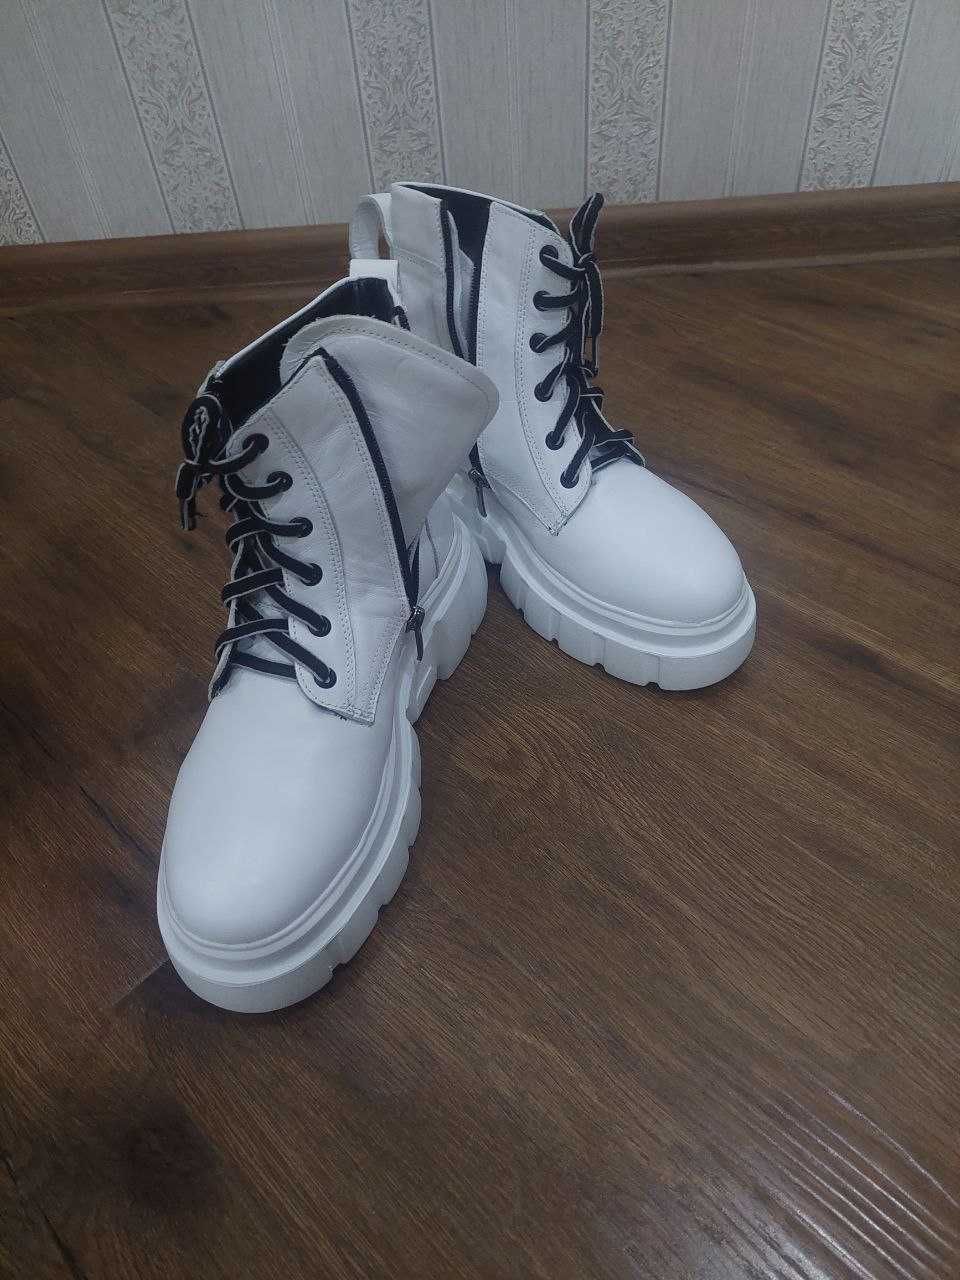 Ботинки кожаные белые, производство Турция